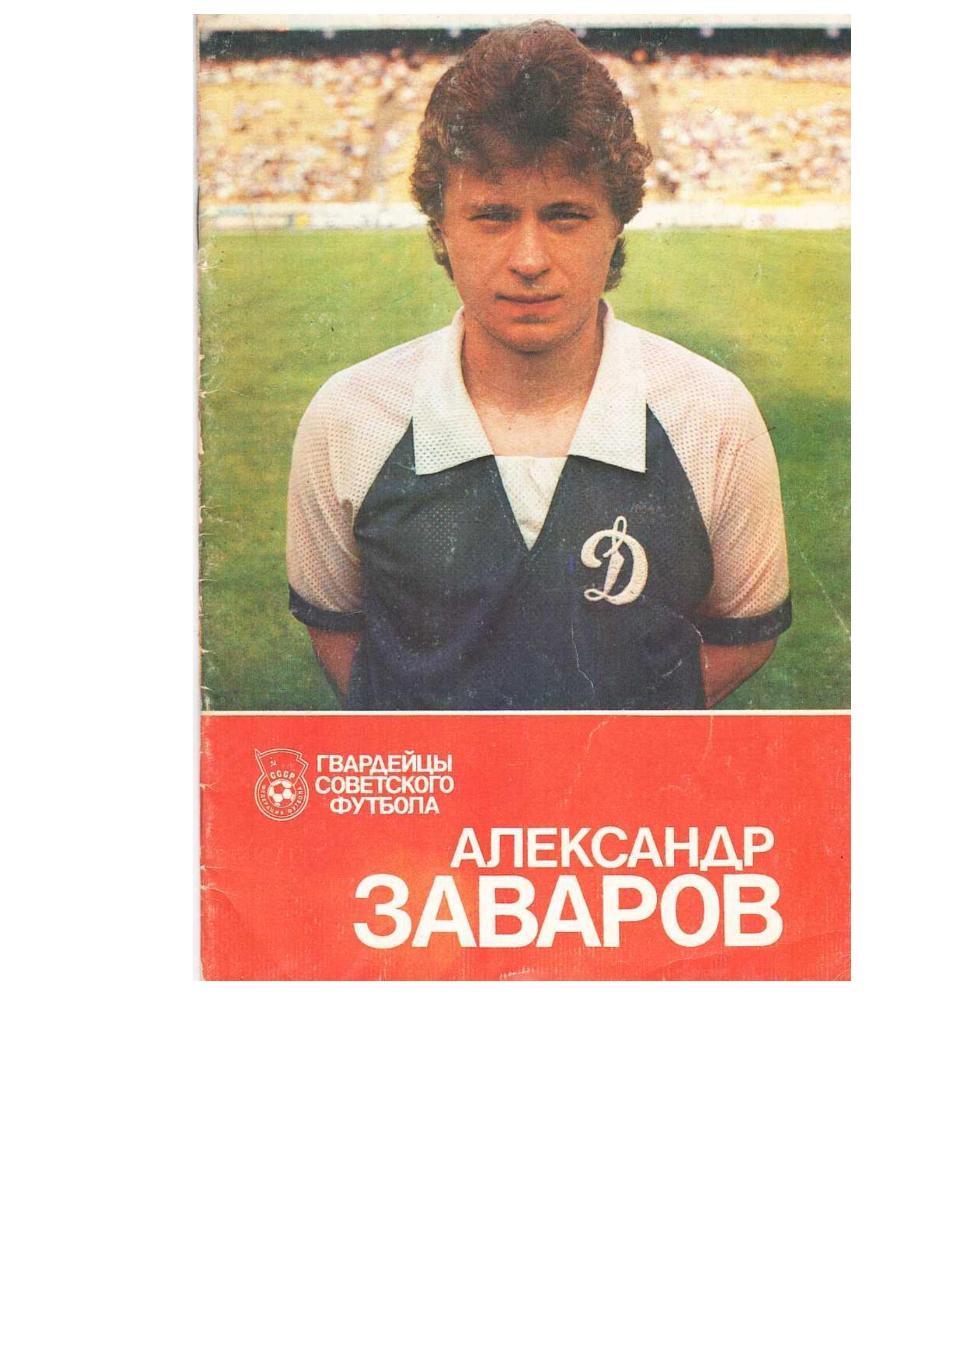 Футбол. Александр Заваров. – Киев, 1989.